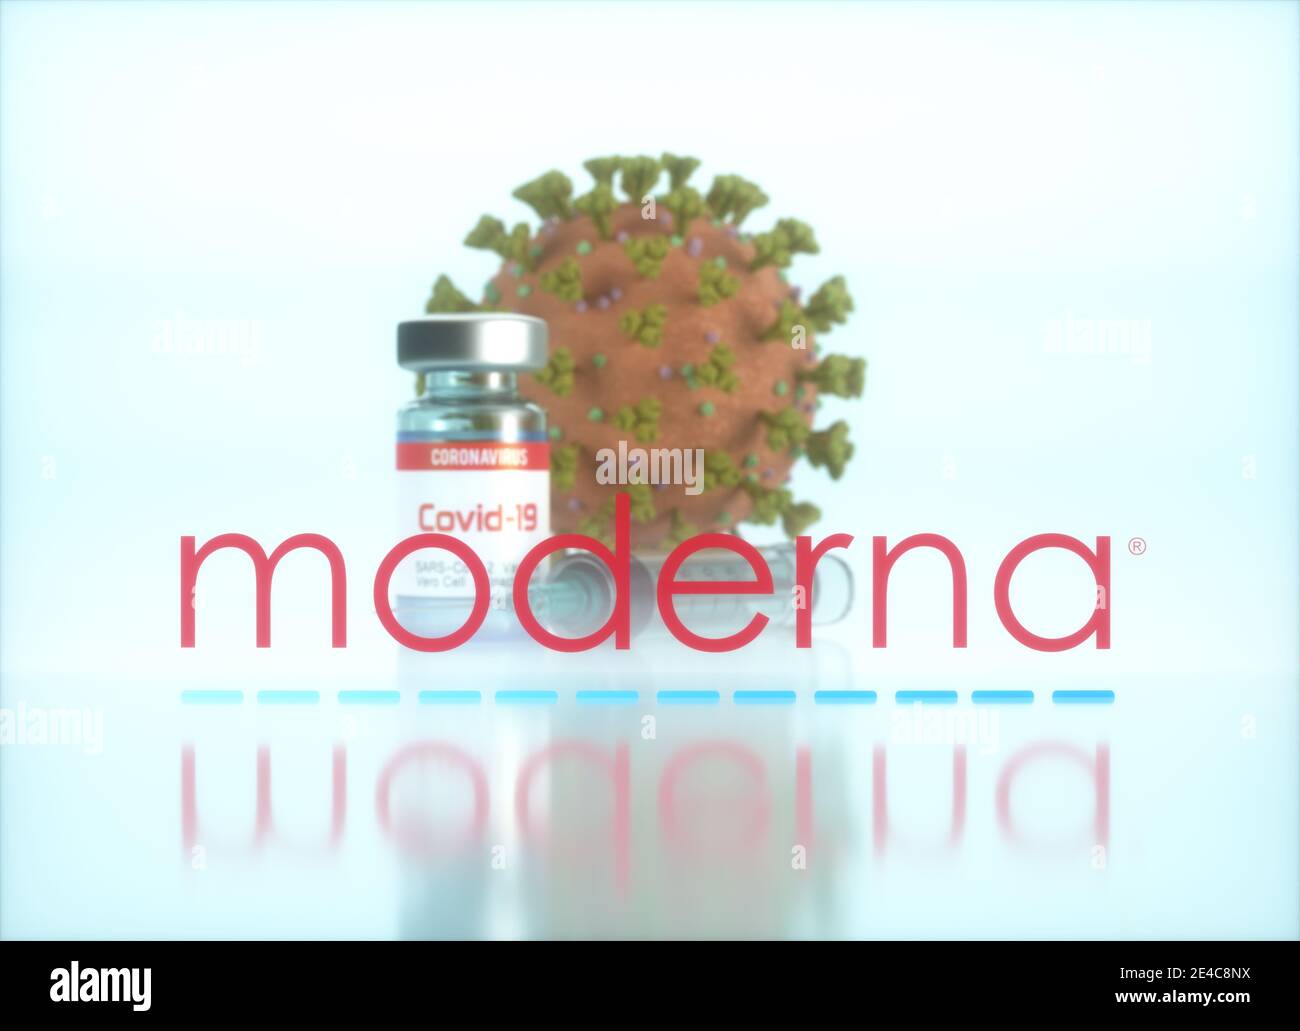 Moderna Vaccine, image conceptuelle pour la découverte d'un vaccin contre le Covid-19, le coronavirus, le 2019-nCoV, le COV-SRAS-2. Illustration 3D. Banque D'Images